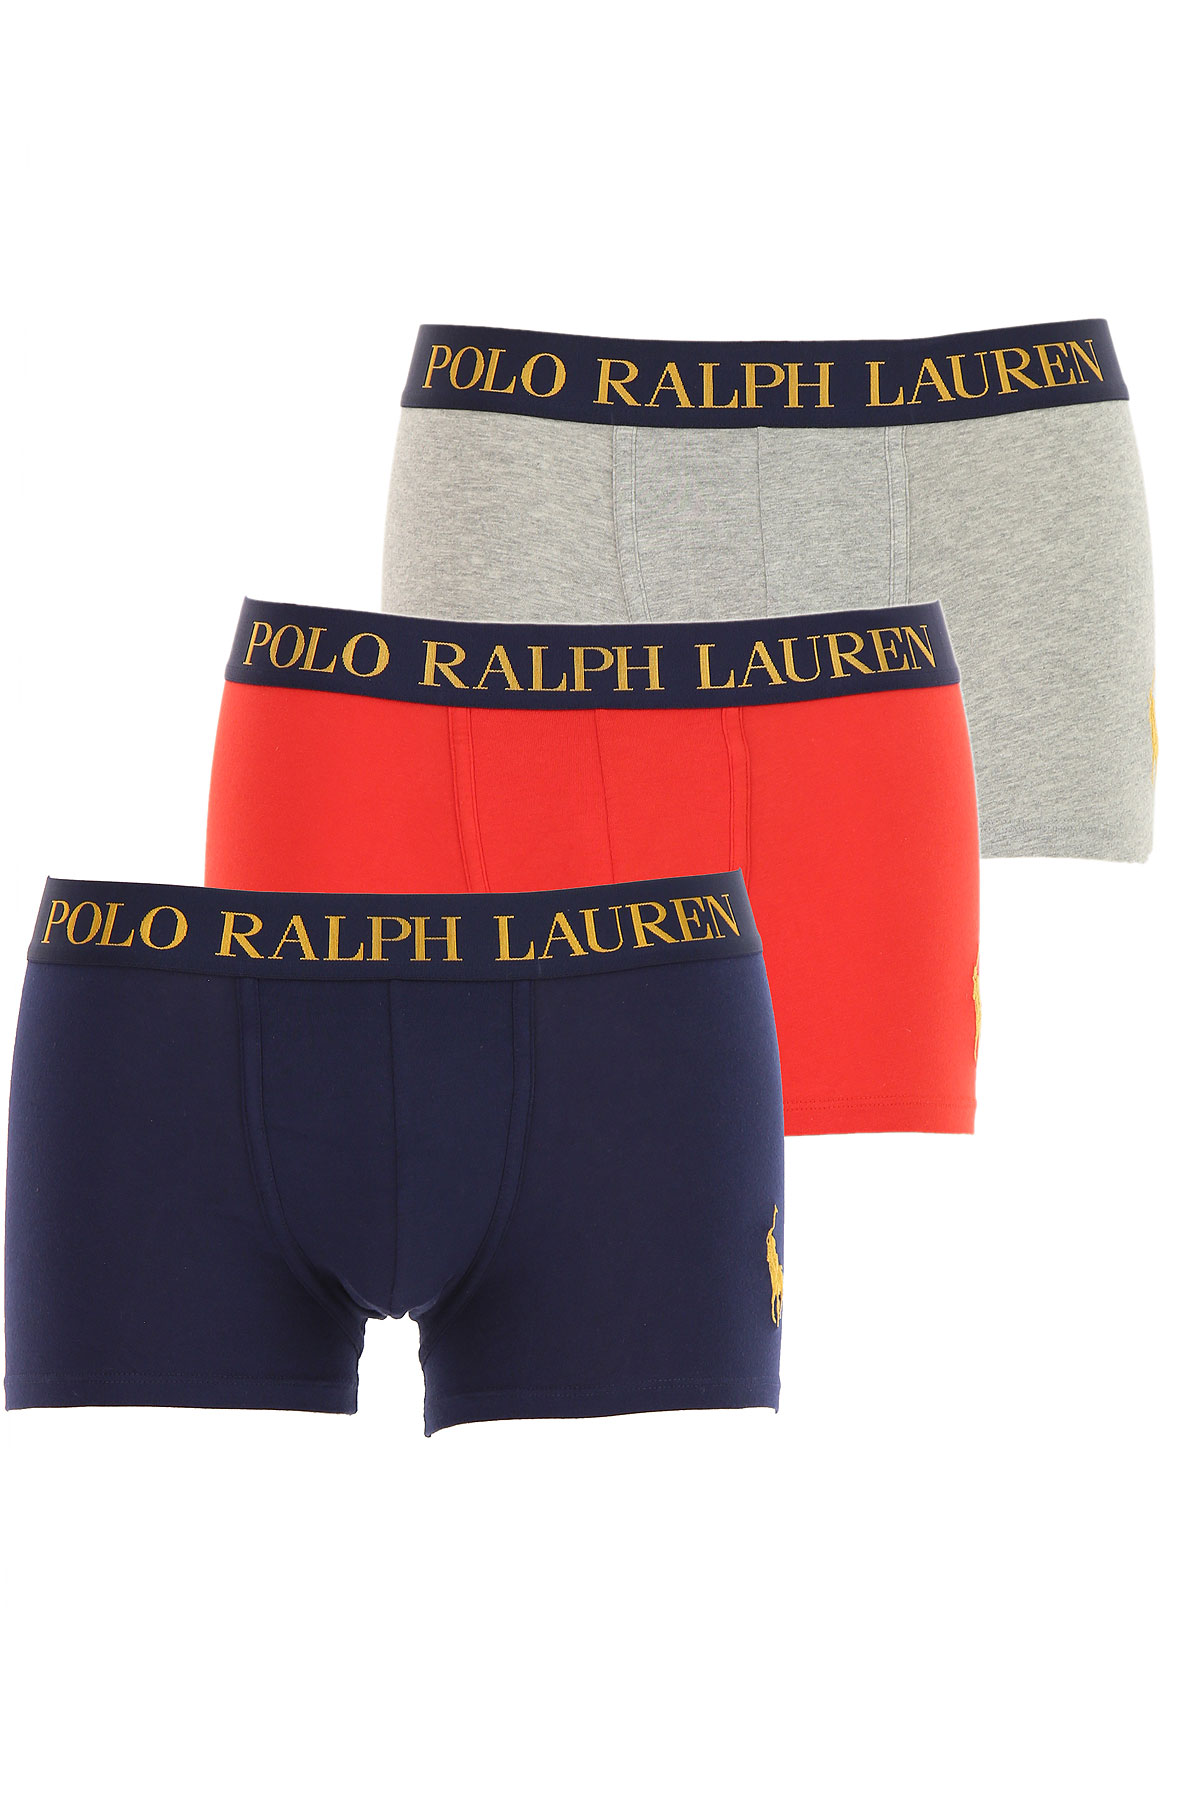 Ralph Lauren Boxer Shorts für Herren, Unterhose, Short, Boxer Günstig im Sale, 3 Pack, Dunkelblau, Baumwolle, 2017, L S XL